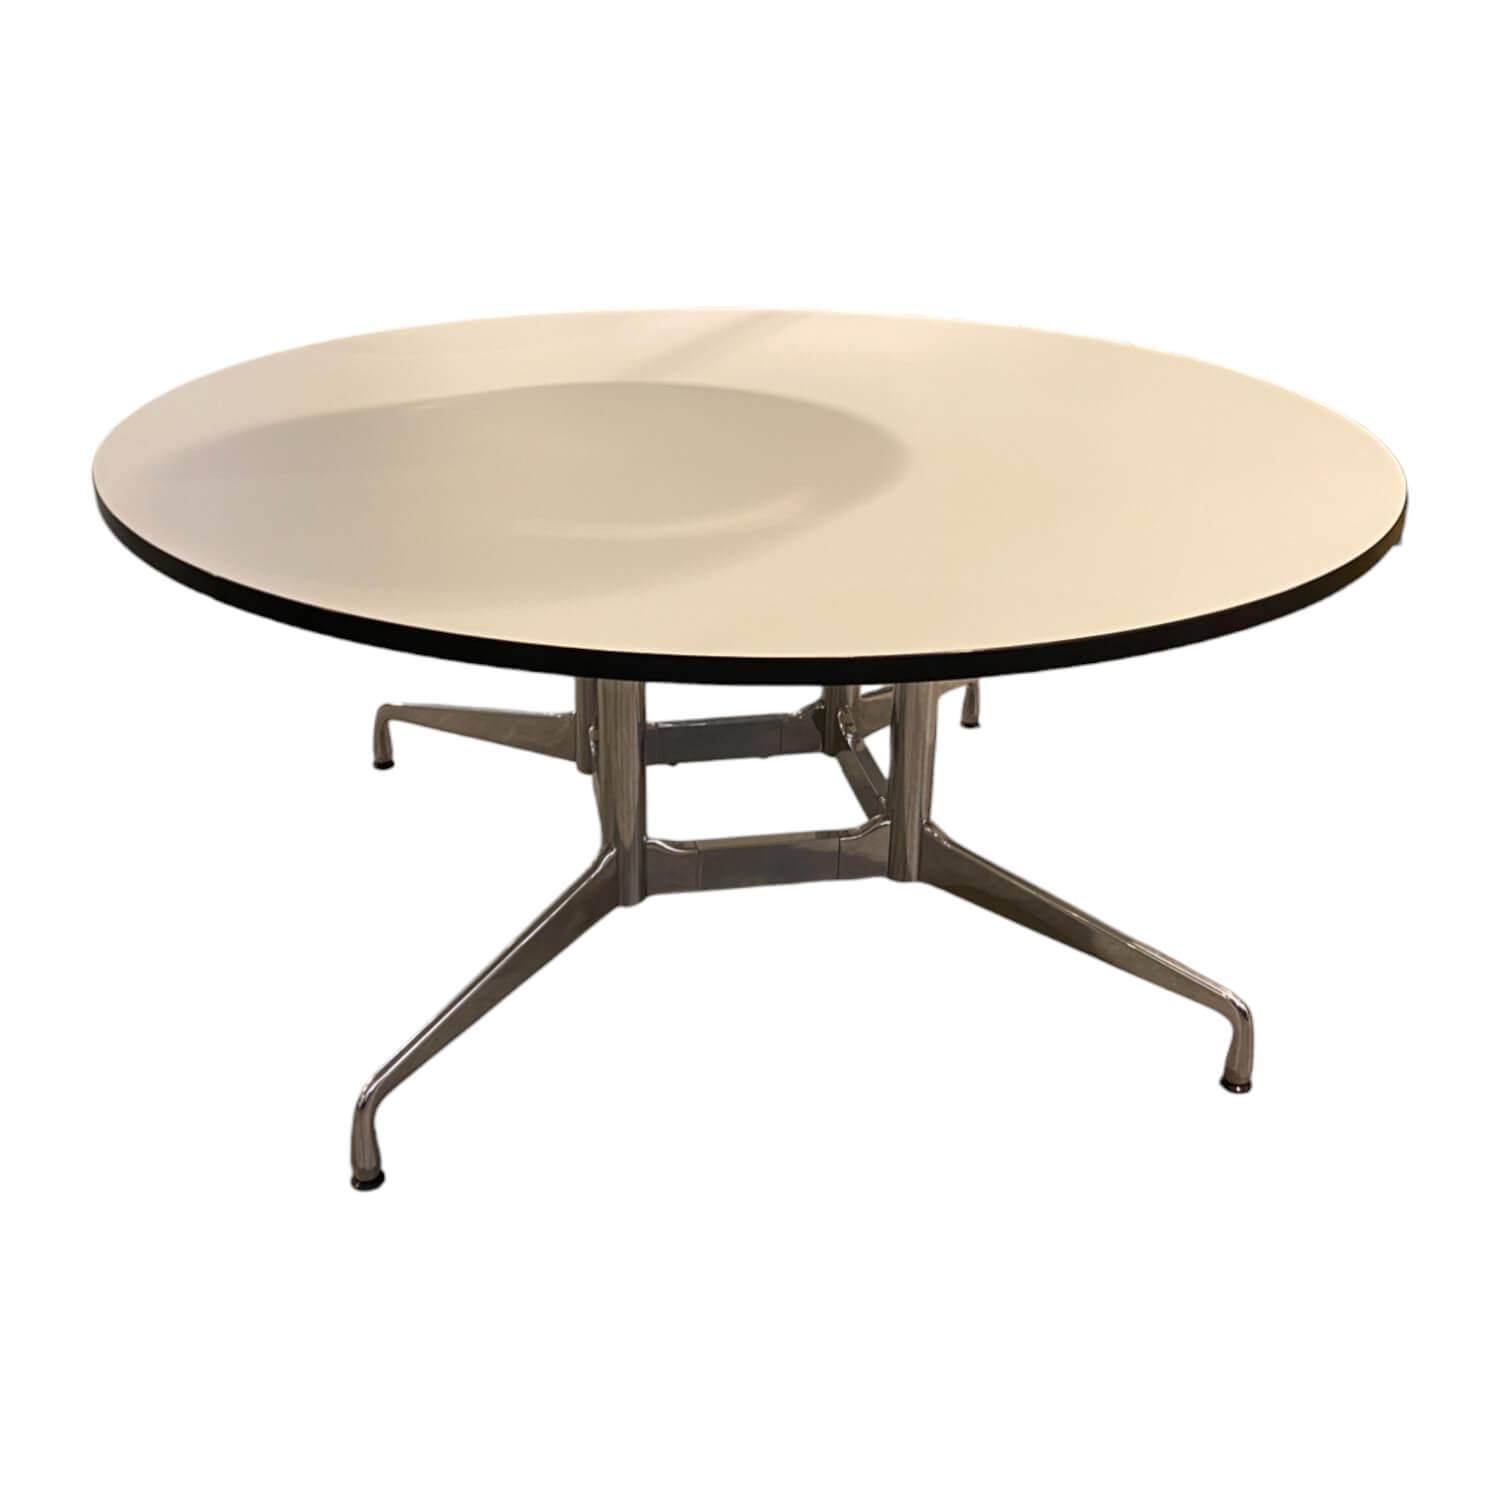 Konferenztisch Eames Segmented Table Platte Hartbelag Weiß Füße Chrom von Vitra